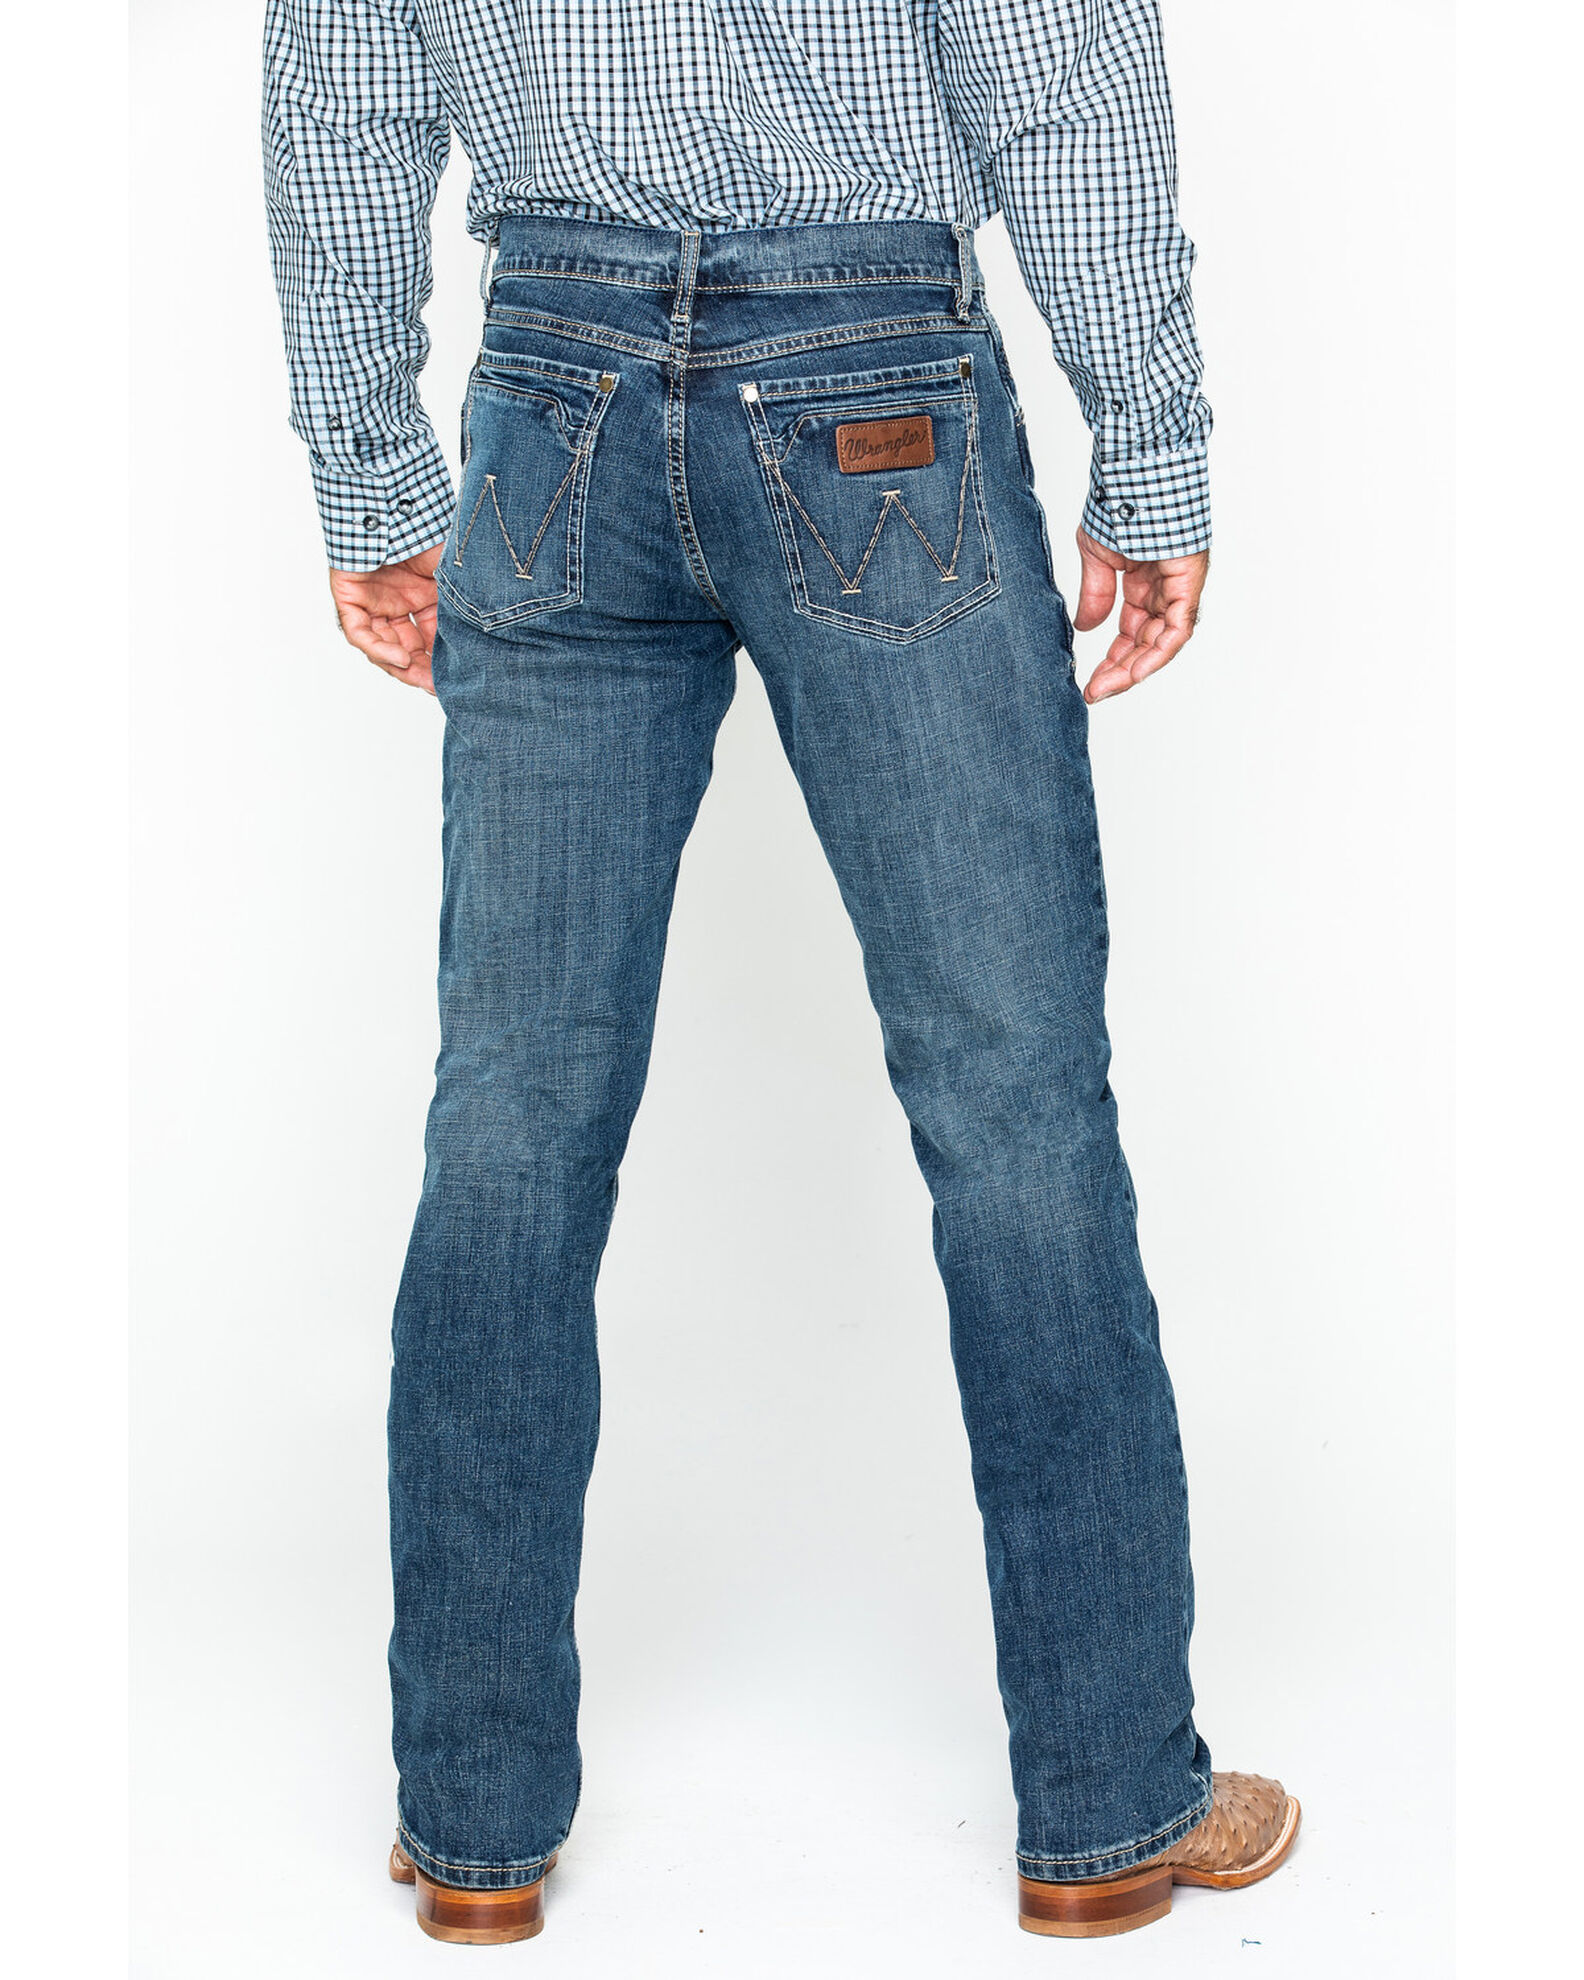 Actualizar 69+ imagen boot barn mens wrangler jeans